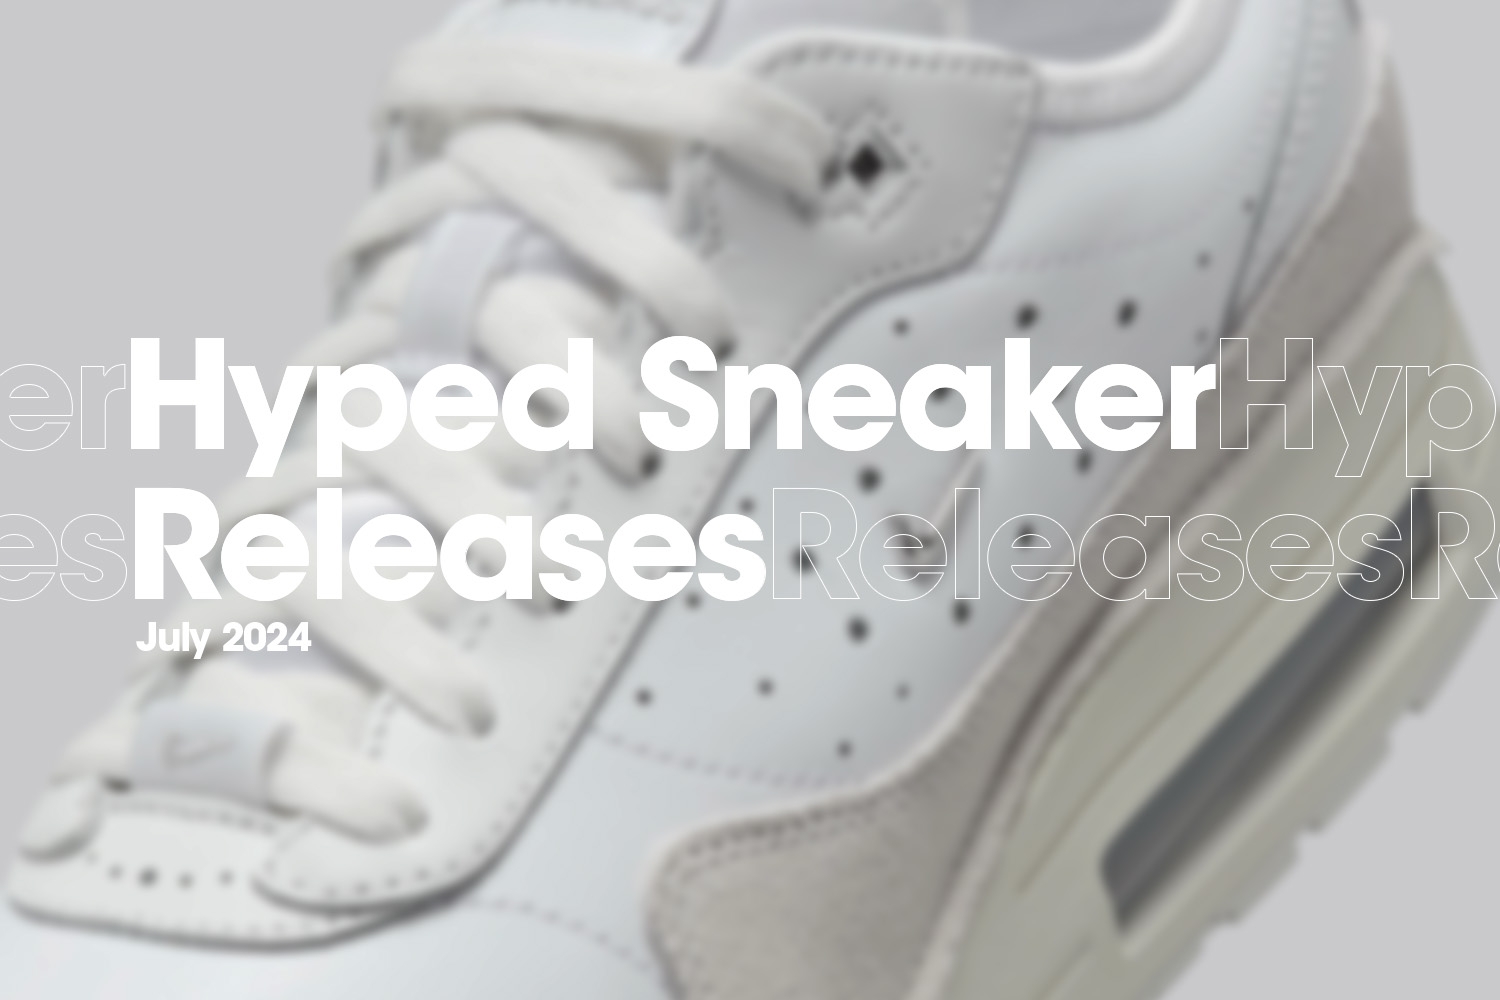 Hyped Sneaker Releases Juli 2024